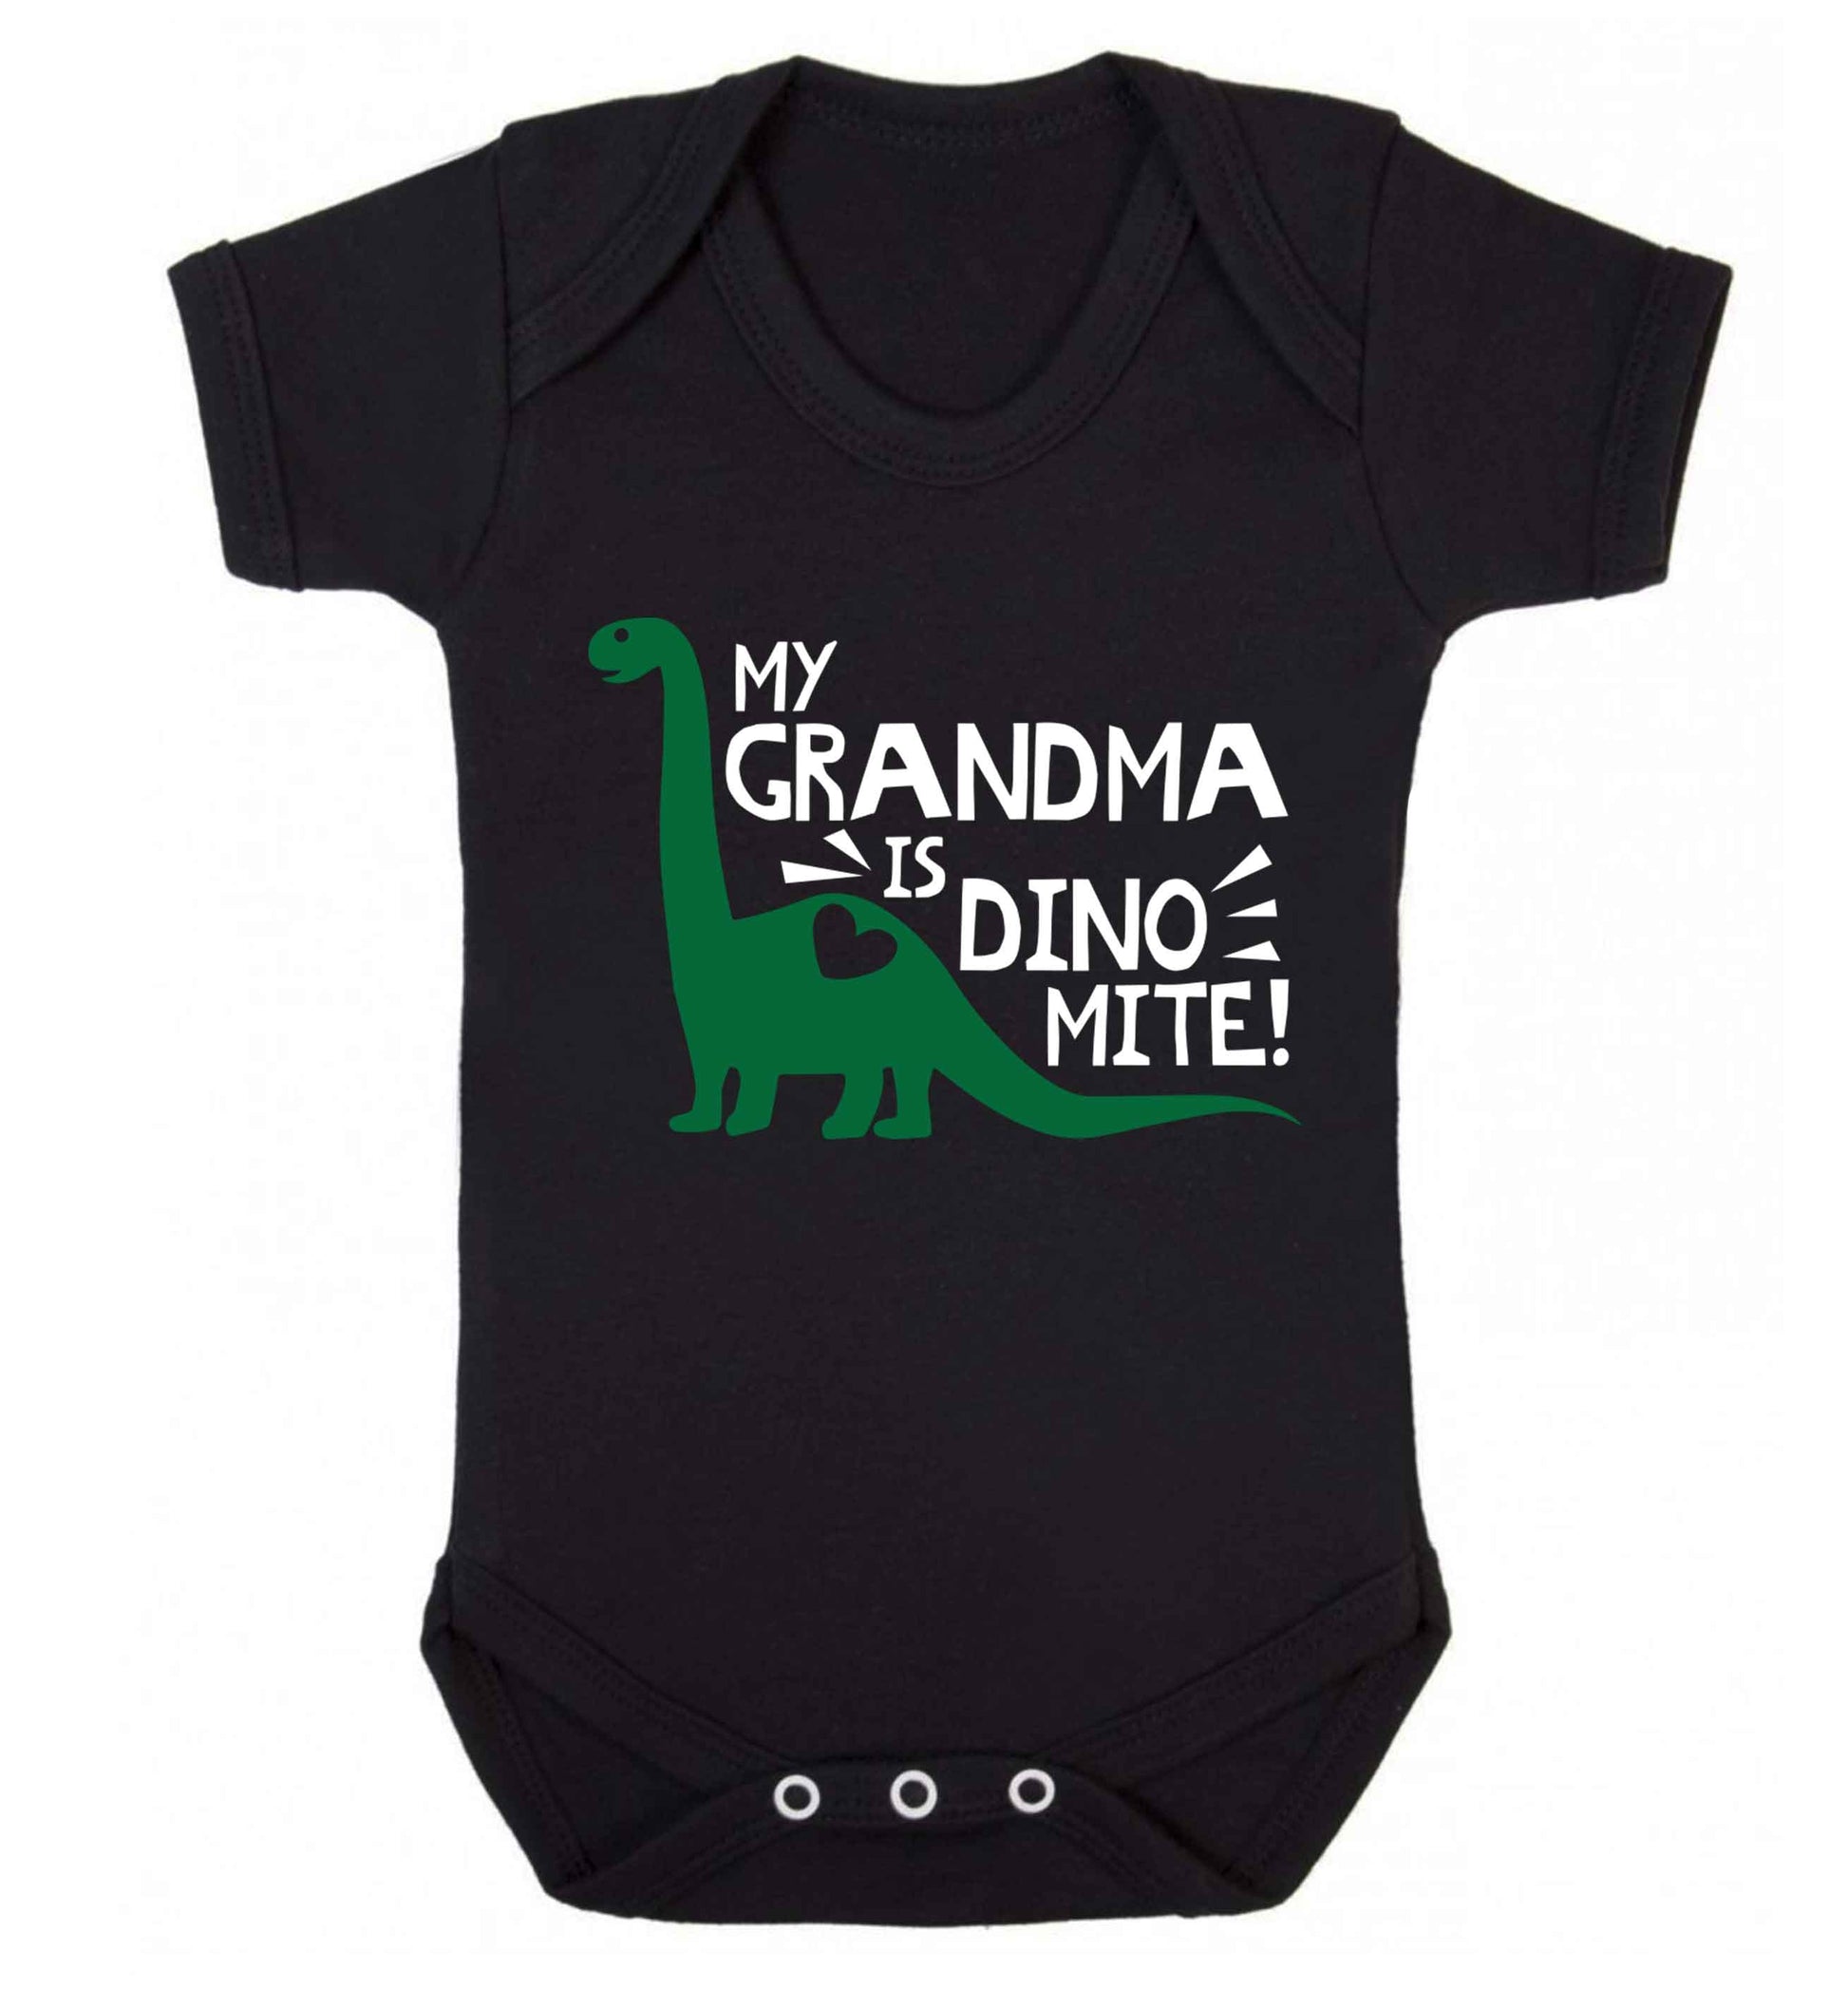 My grandma is dinomite! Baby Vest black 18-24 months